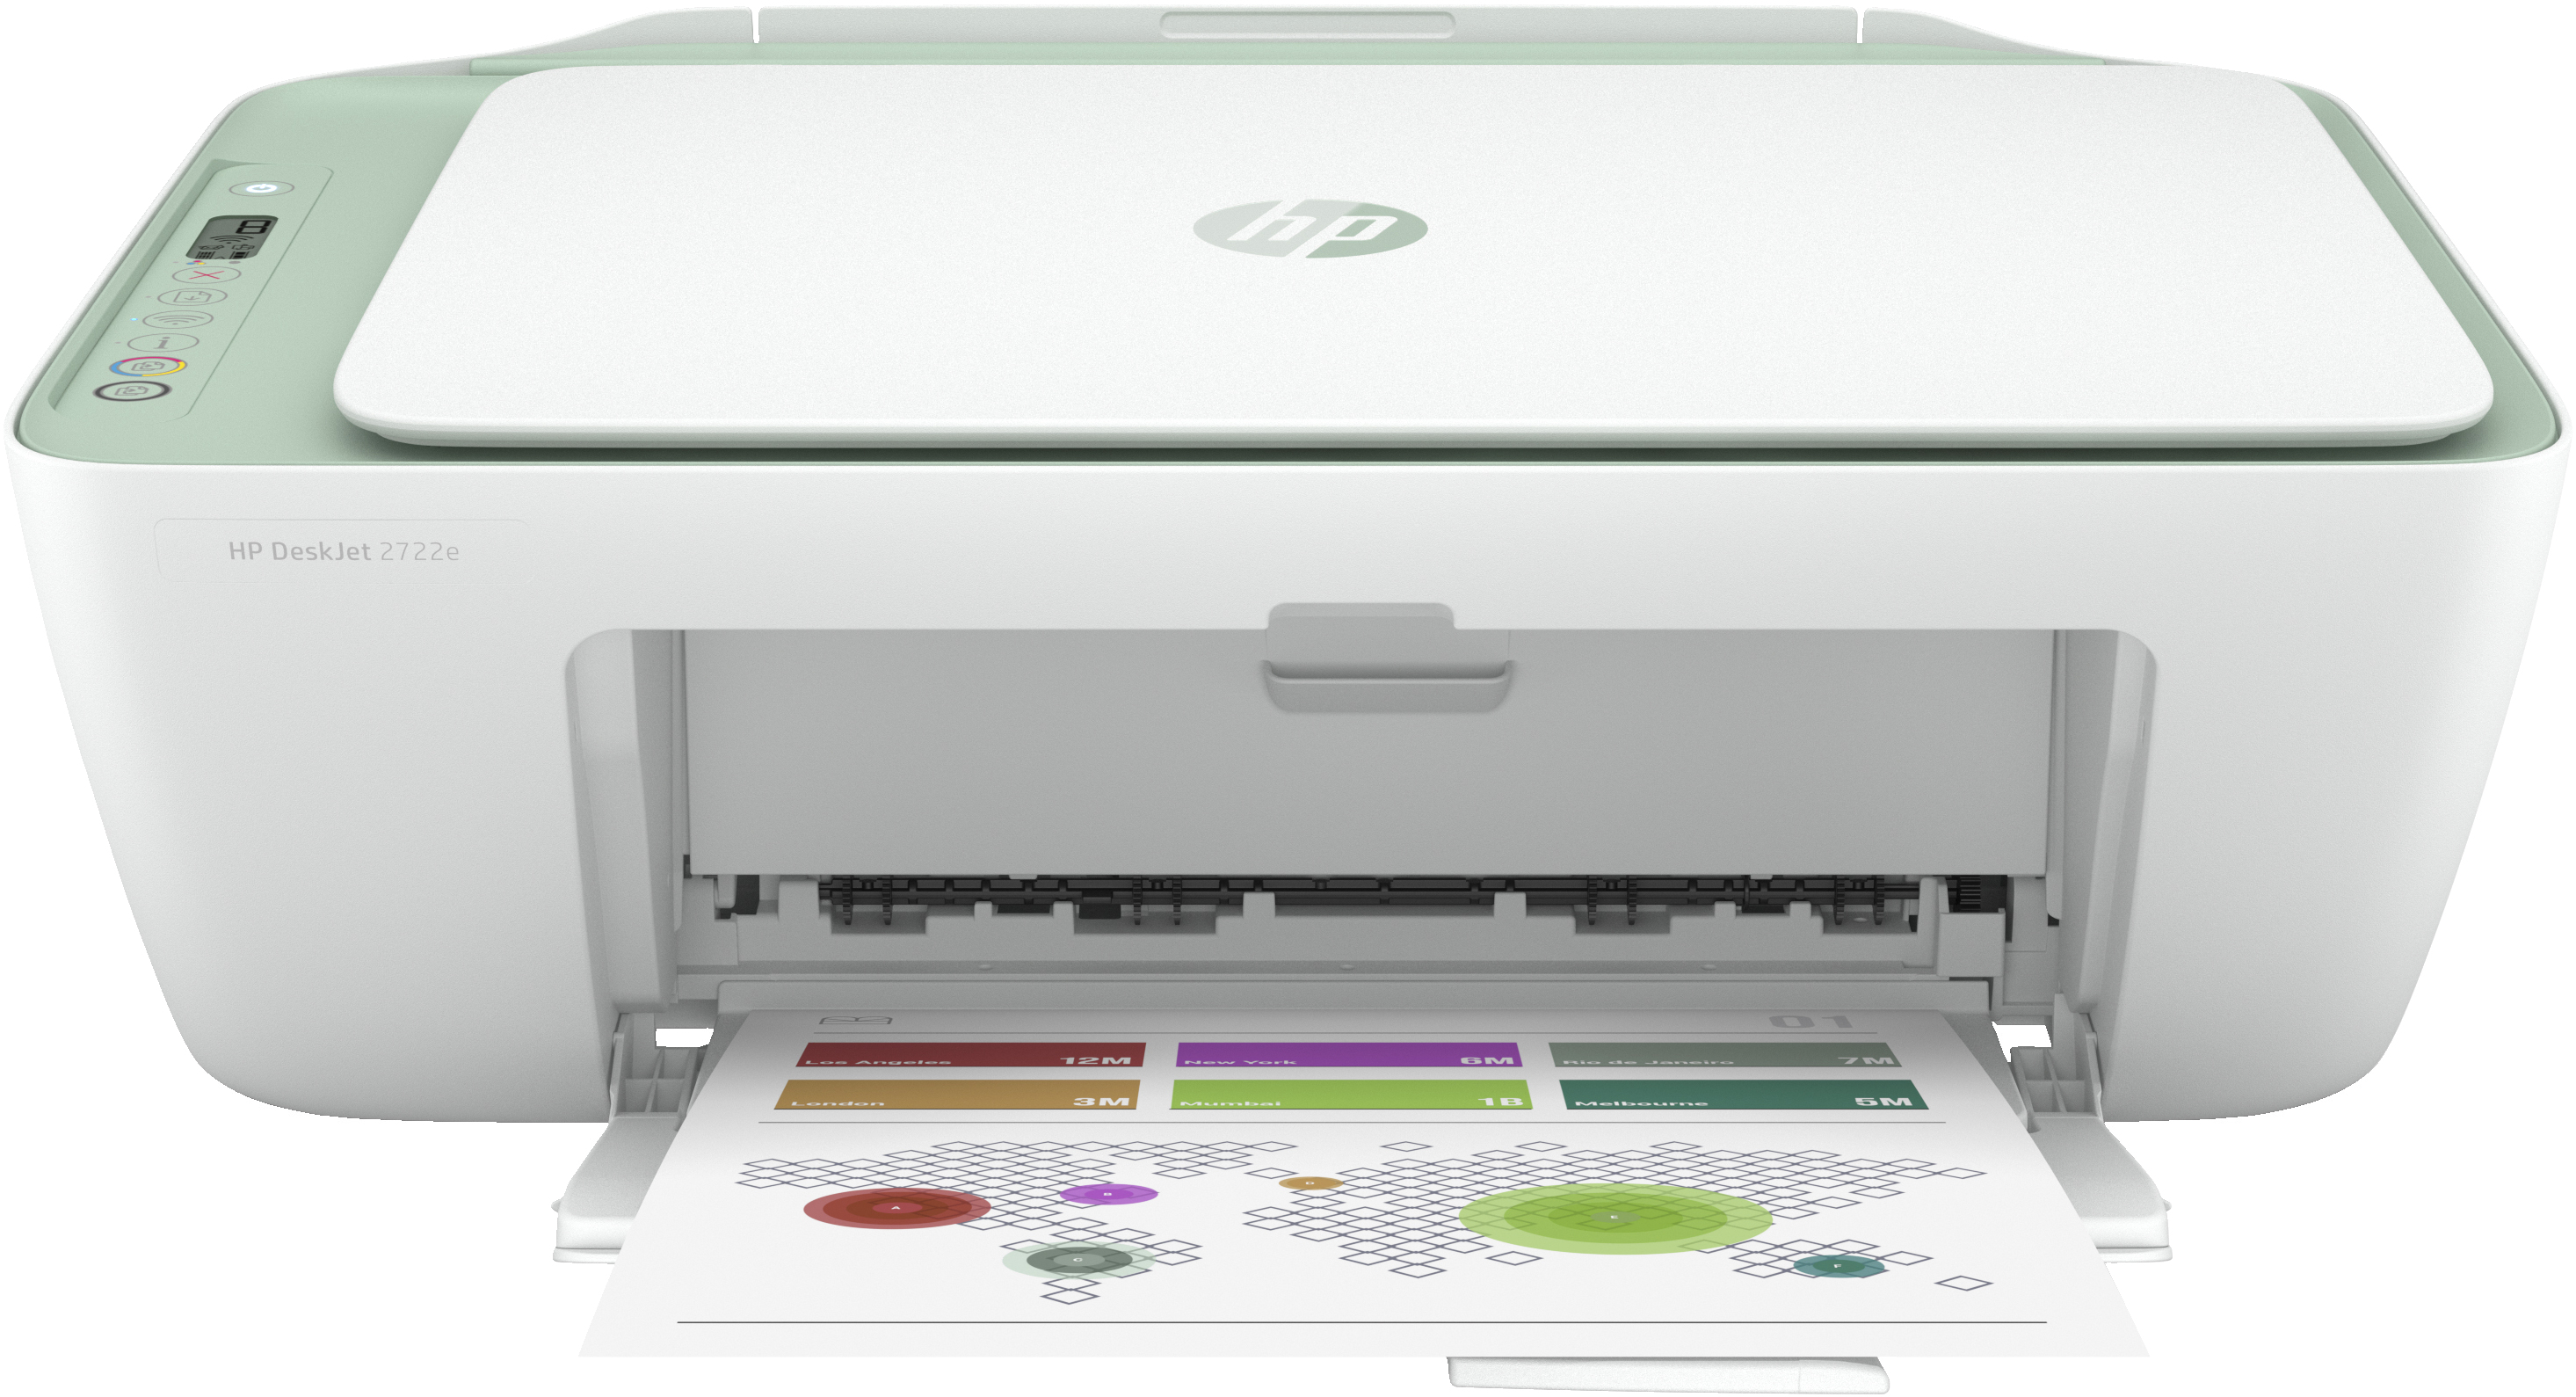 HP DeskJet Imprimante Tout-en-un HP 2722e, Couleur, Imprimante pour Domicile, Impression, copie, numérisation, Sans fil. HP+. Éligibilité HP Instant Ink. Imprimer depuis un téléphone ou une tablette